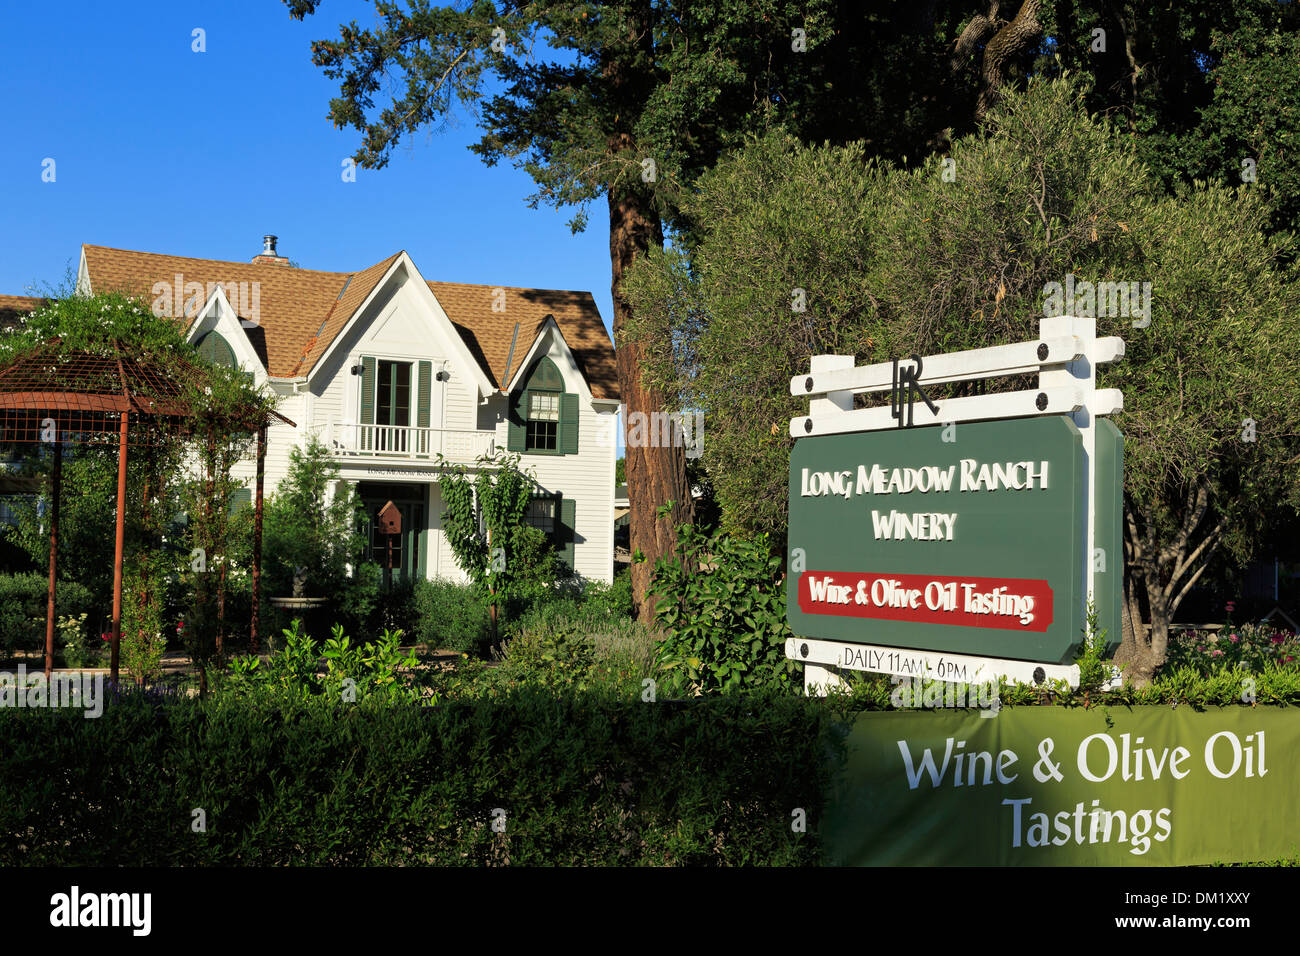 Long Meadow Ranch Winery,St. Helena,Napa Valley,California,USA Stock Photo